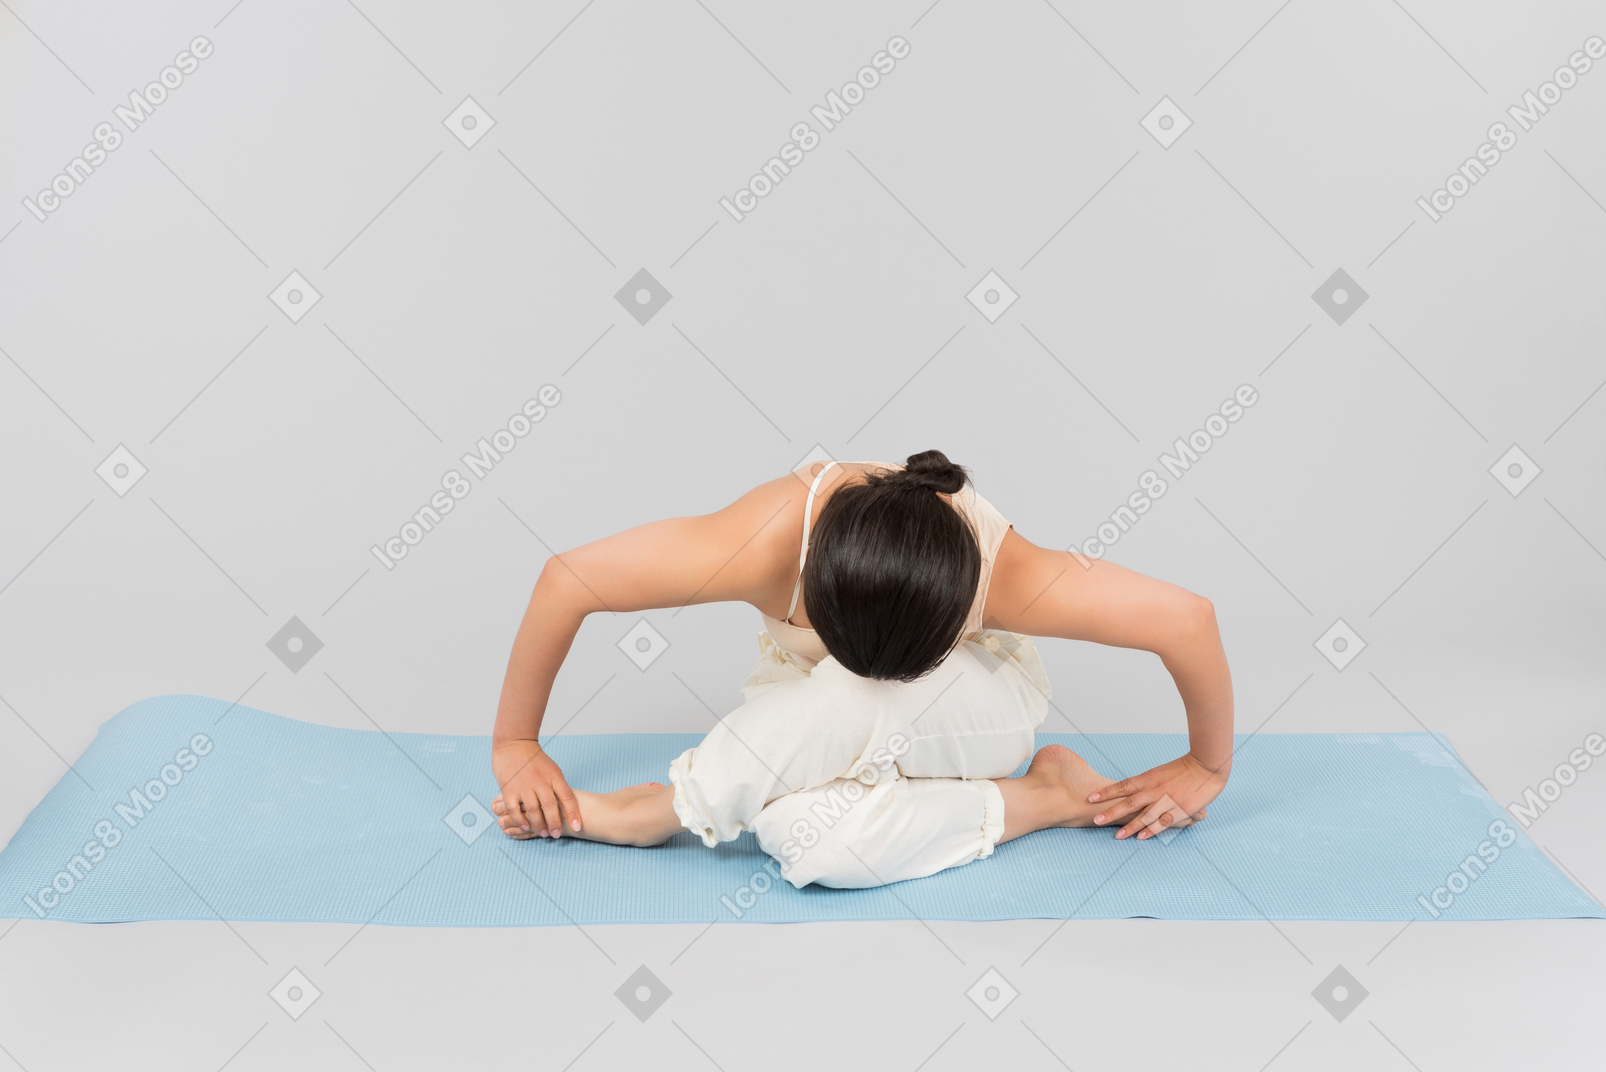 Jovem indiana sentado em pose de ioga no tapete de ioga